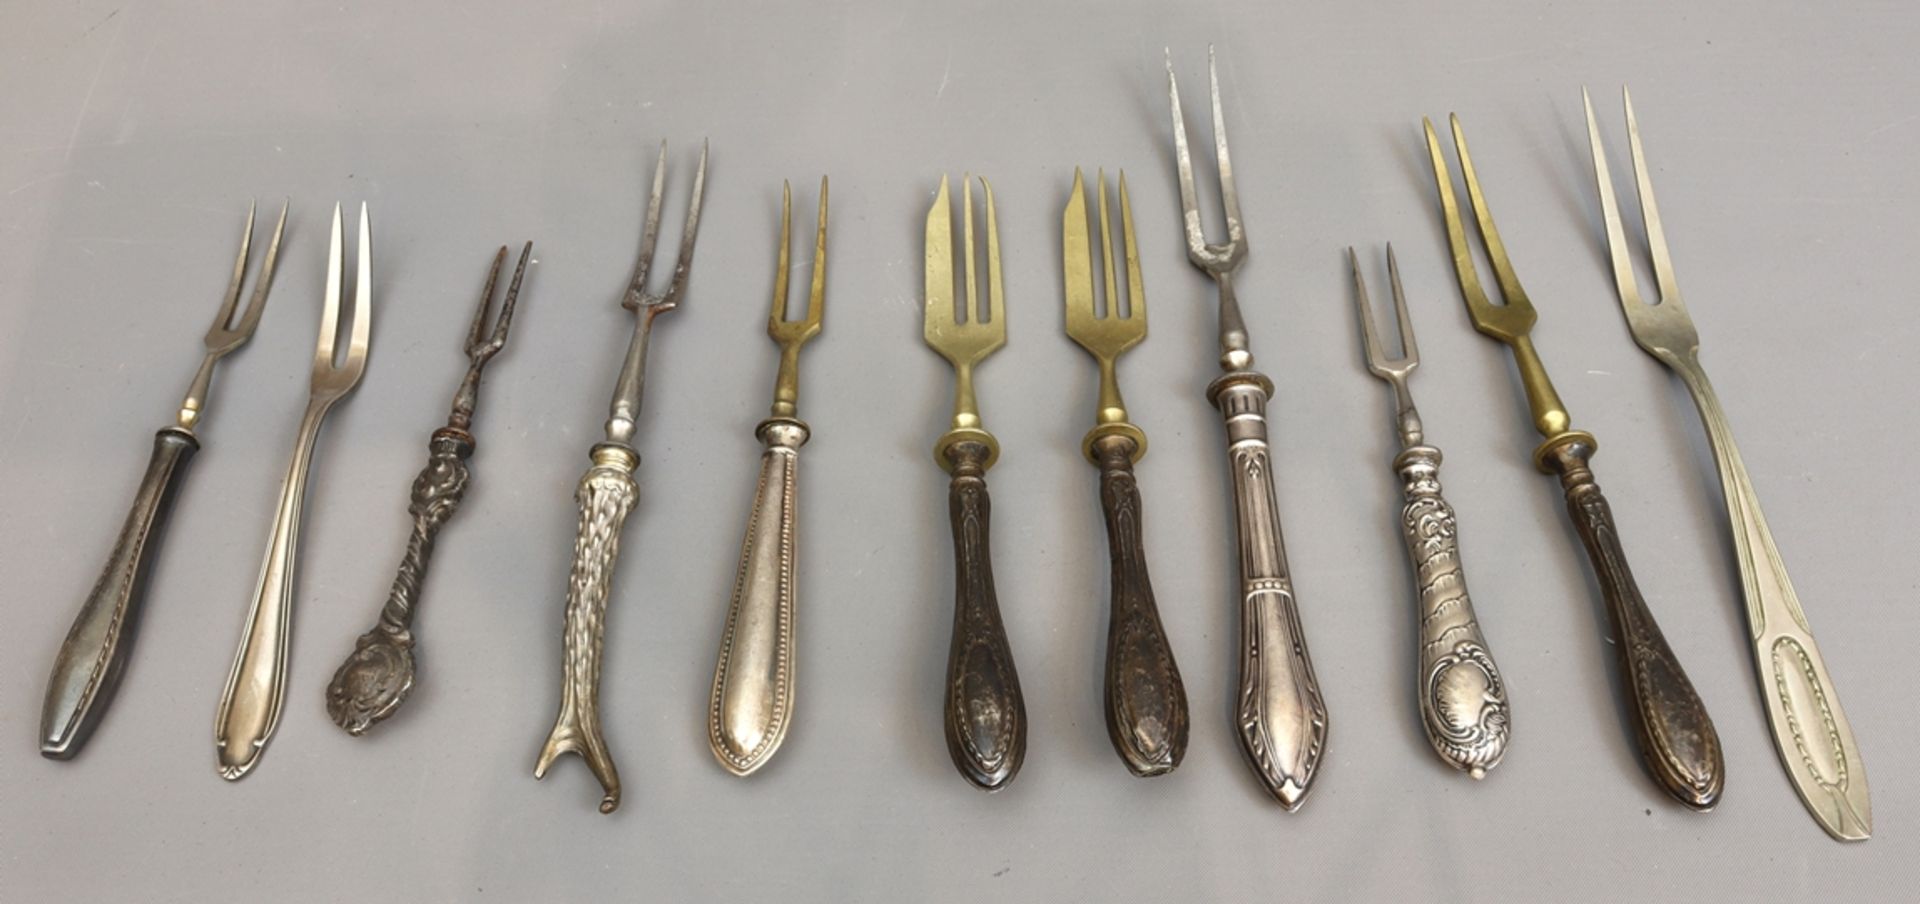 Lot of serving forks, Historism to 30s, German - Image 2 of 3